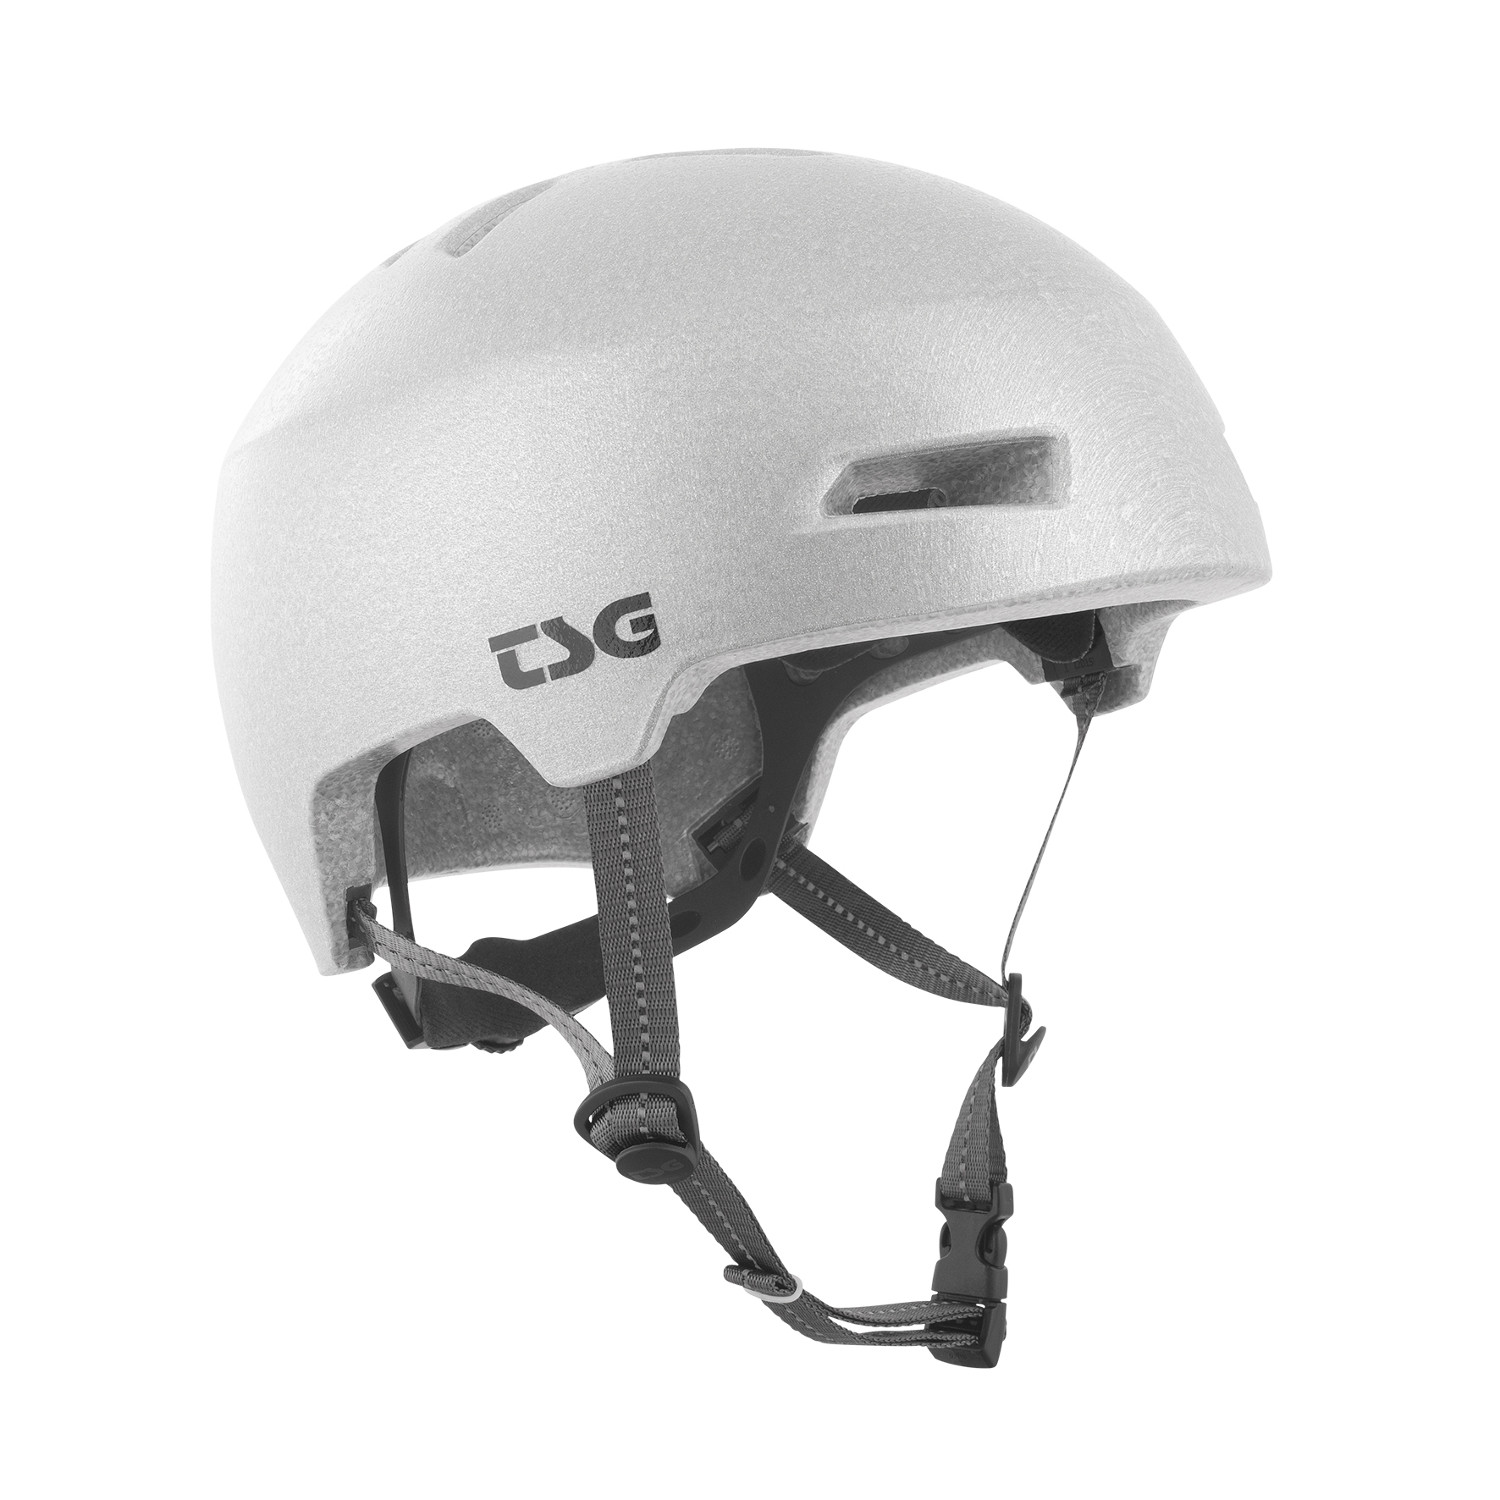 TSG BMX/Dirt Helmet Status Special Makeup - Reflect